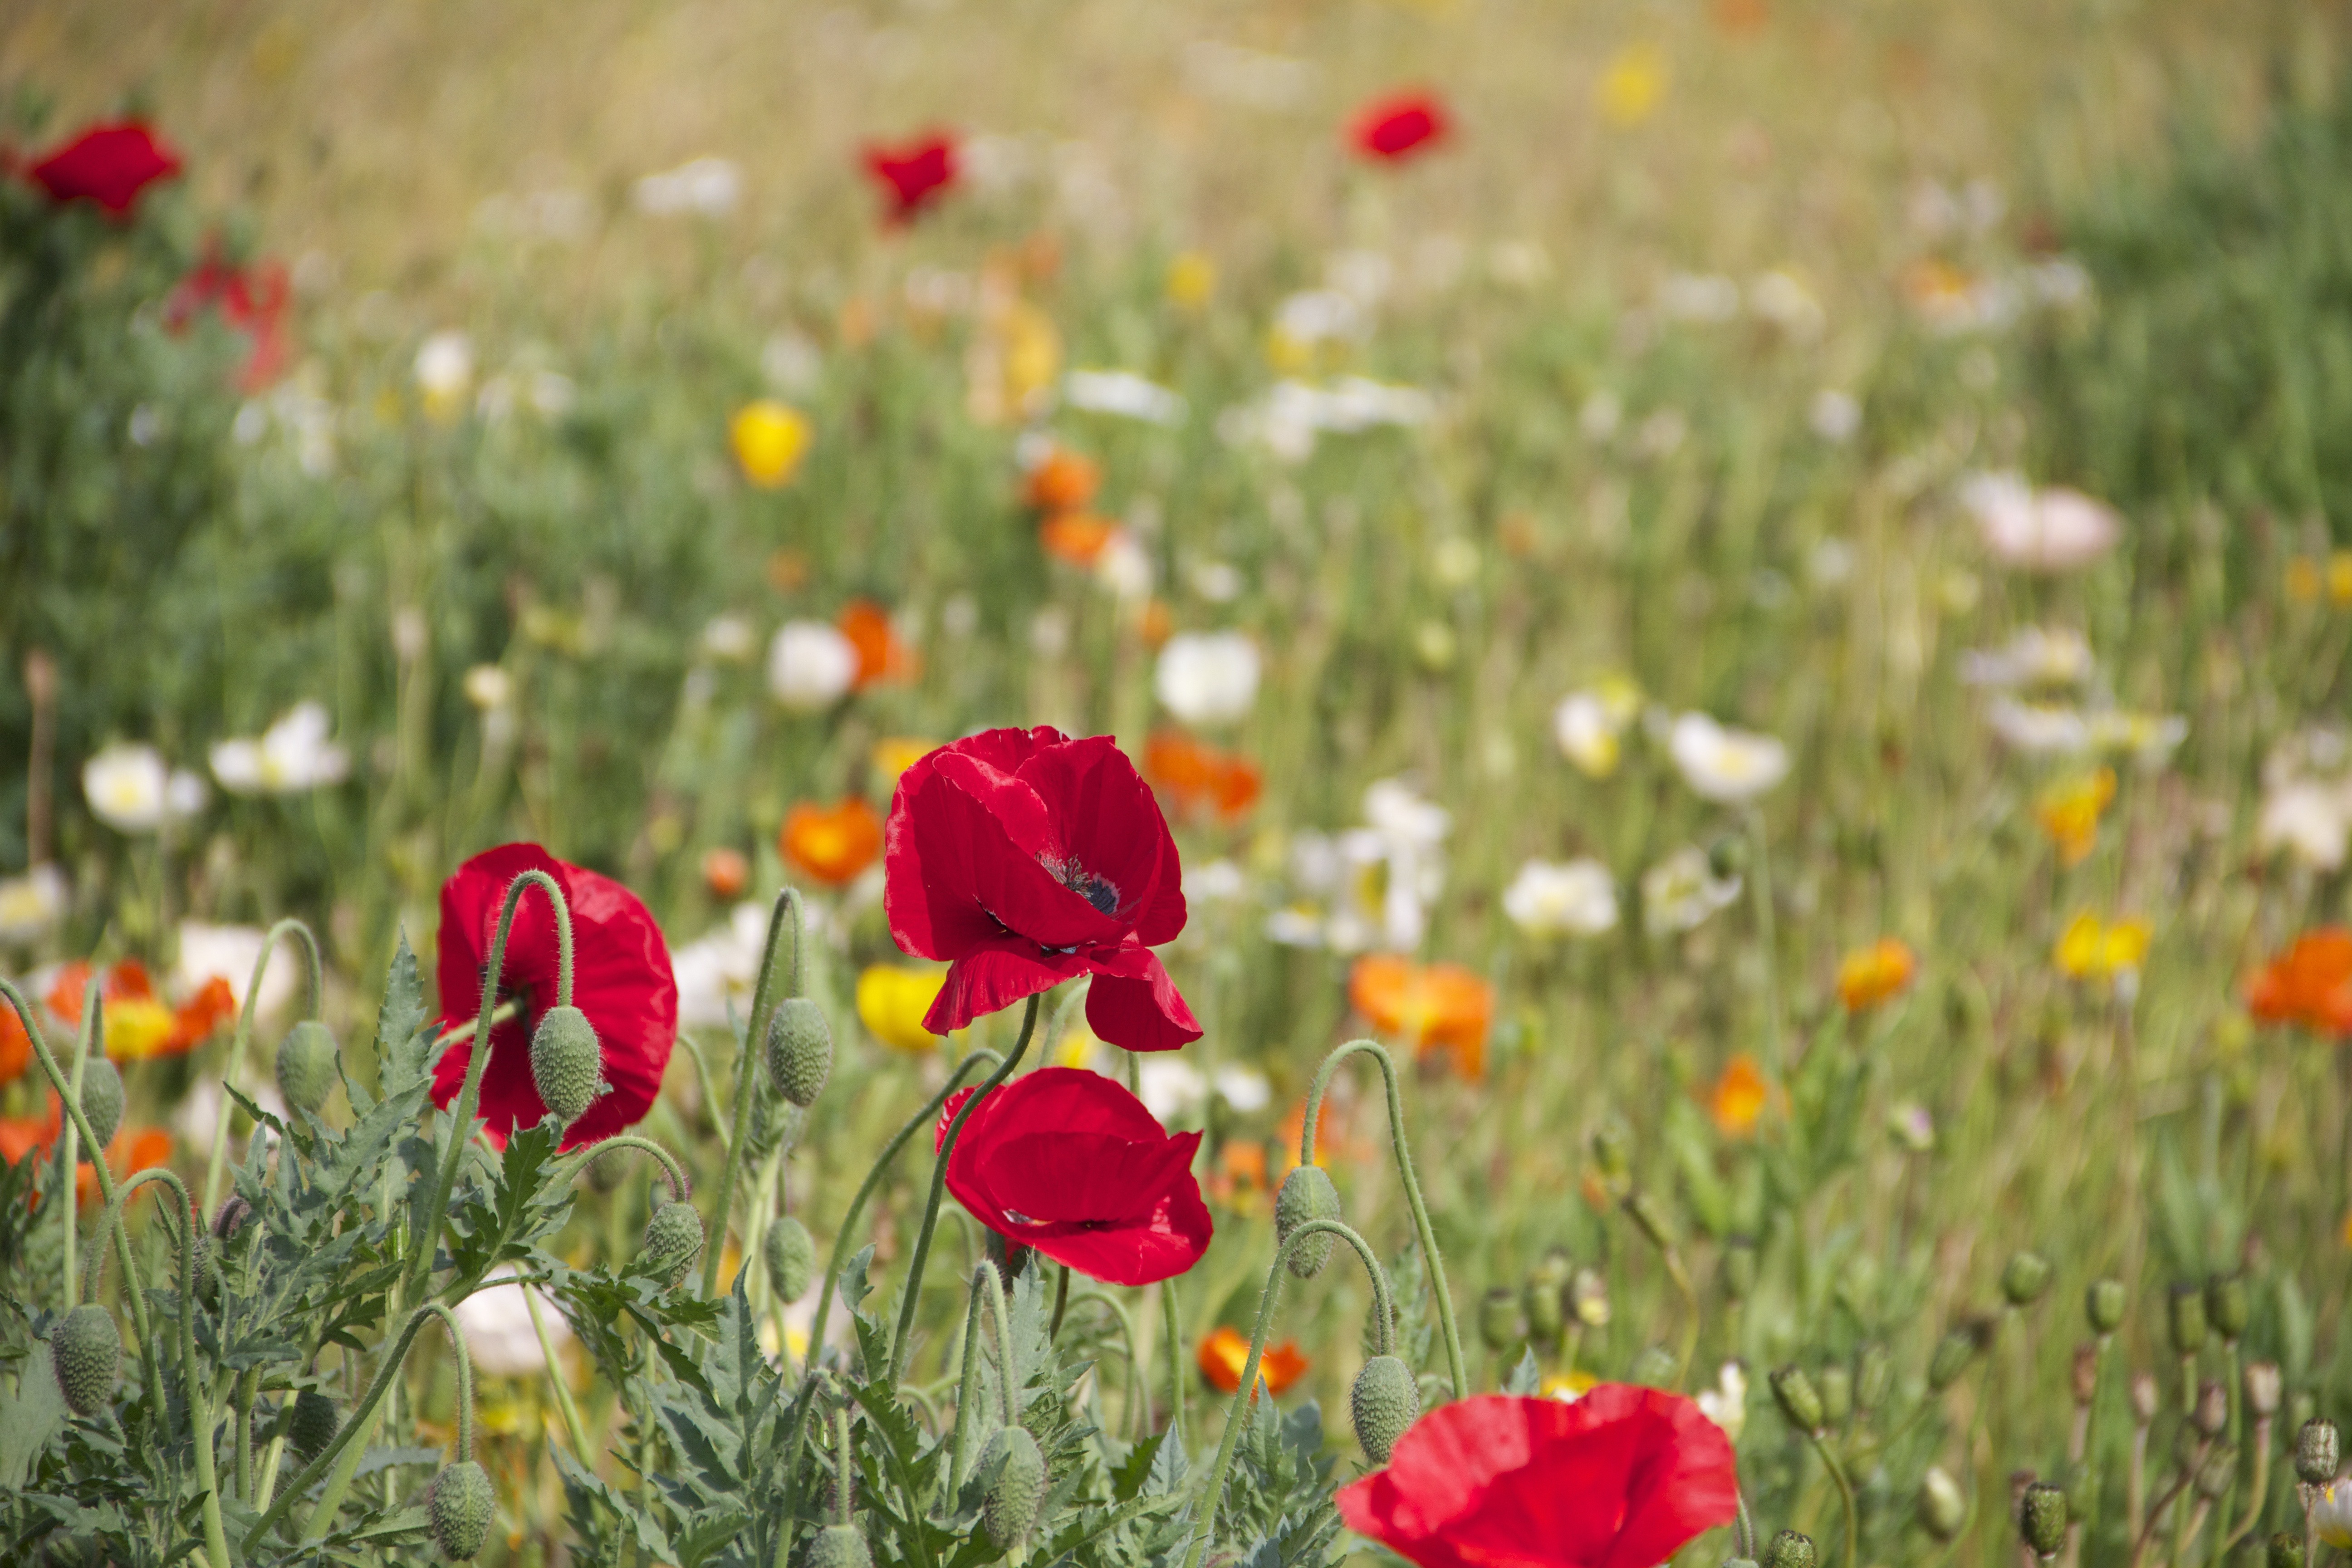 Обои пейзаж трава цветок - бесплатные картинки на Fonwall